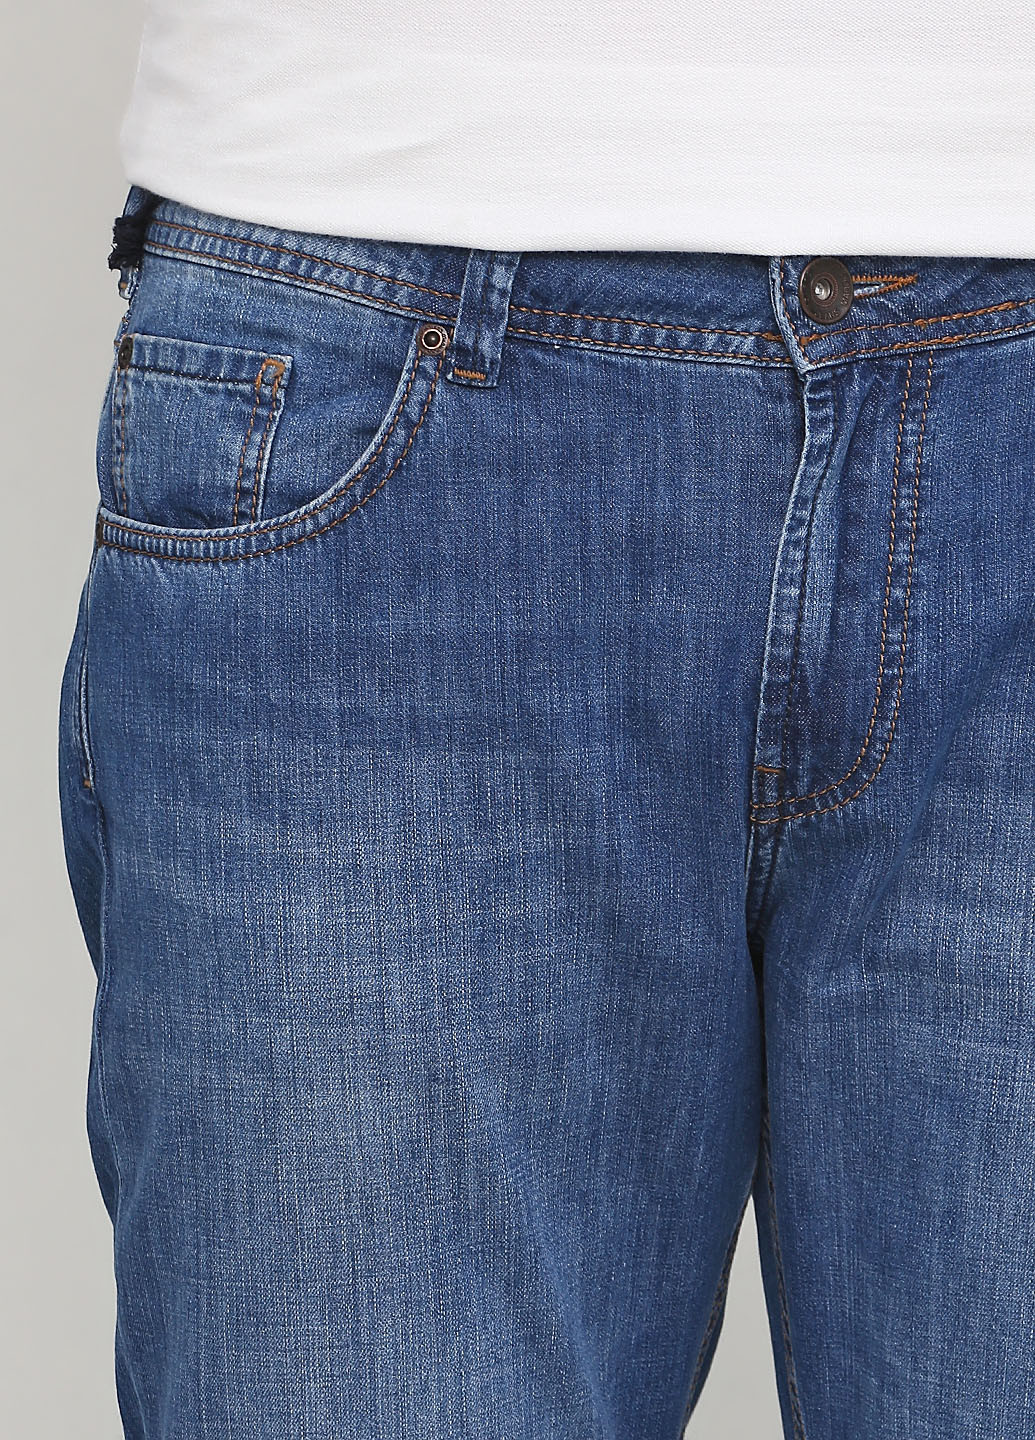 Синие летние прямые джинсы Madoc